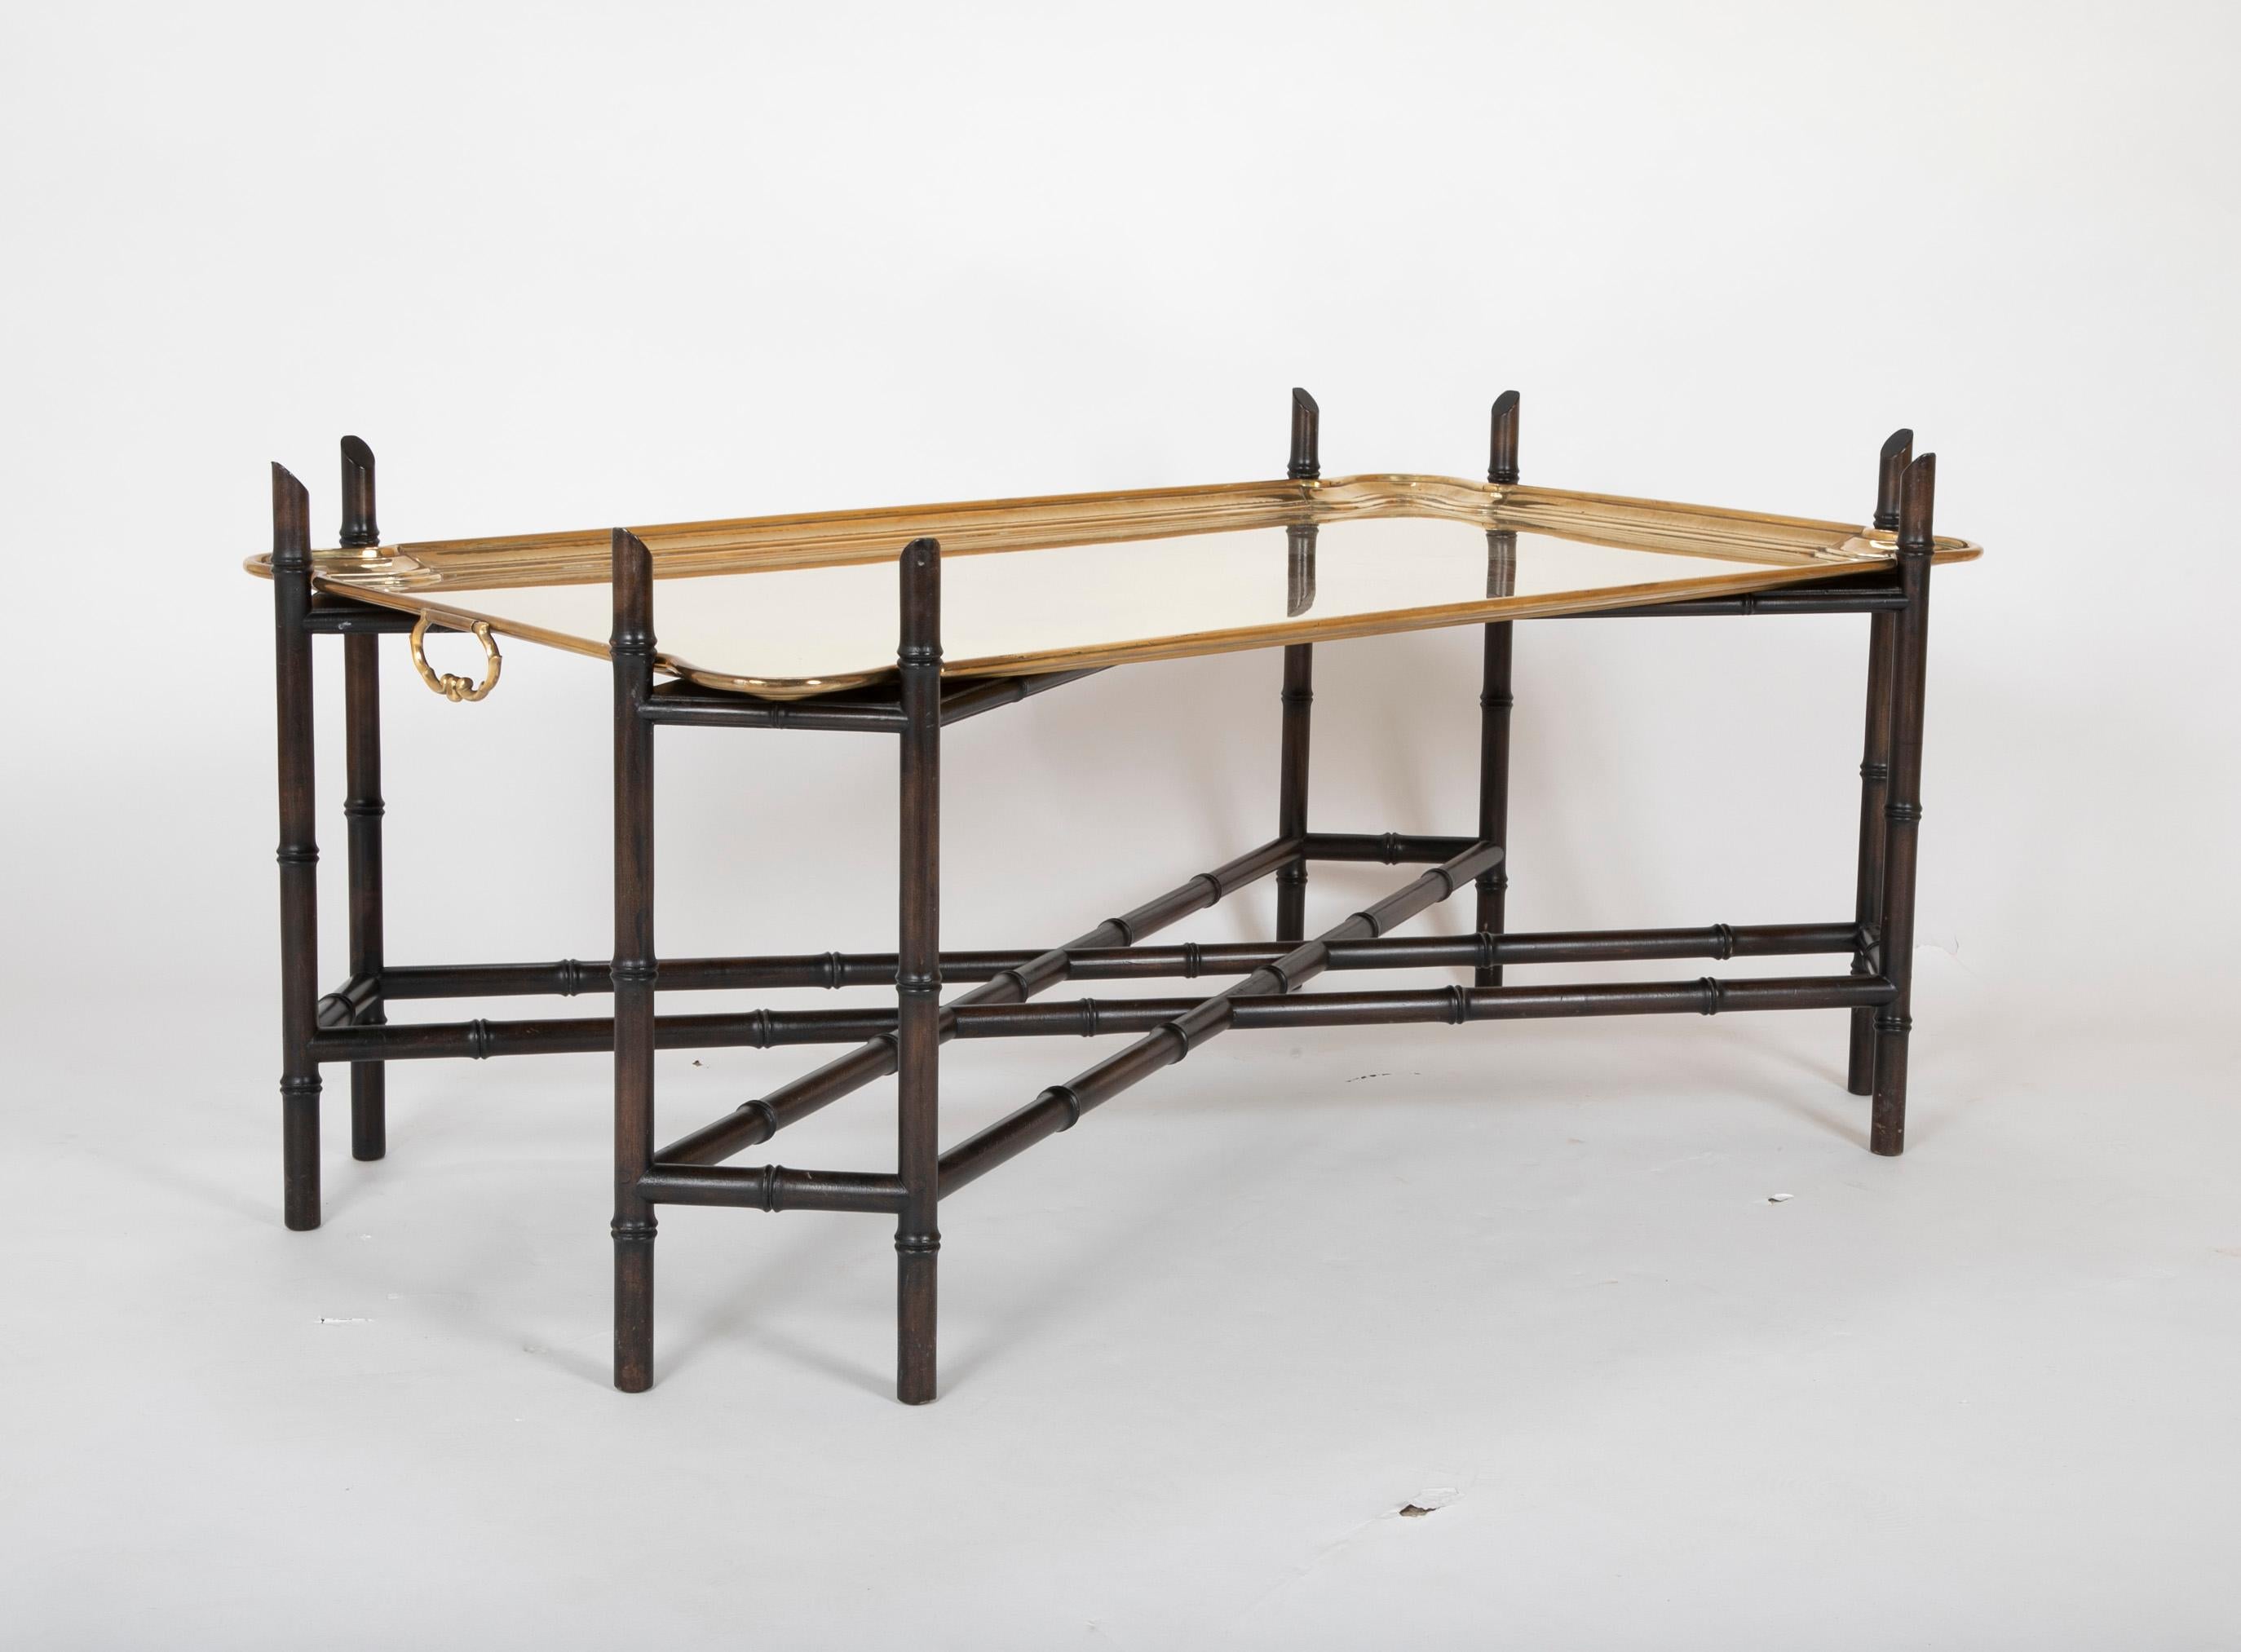 Une belle et élégante table basse des années 1960 avec un plateau en laiton amovible à grande échelle avec poignées, reposant sur une base en faux bambou ébénisé. Cette pièce est idéale pour un intérieur traditionnel et se marie bien avec les